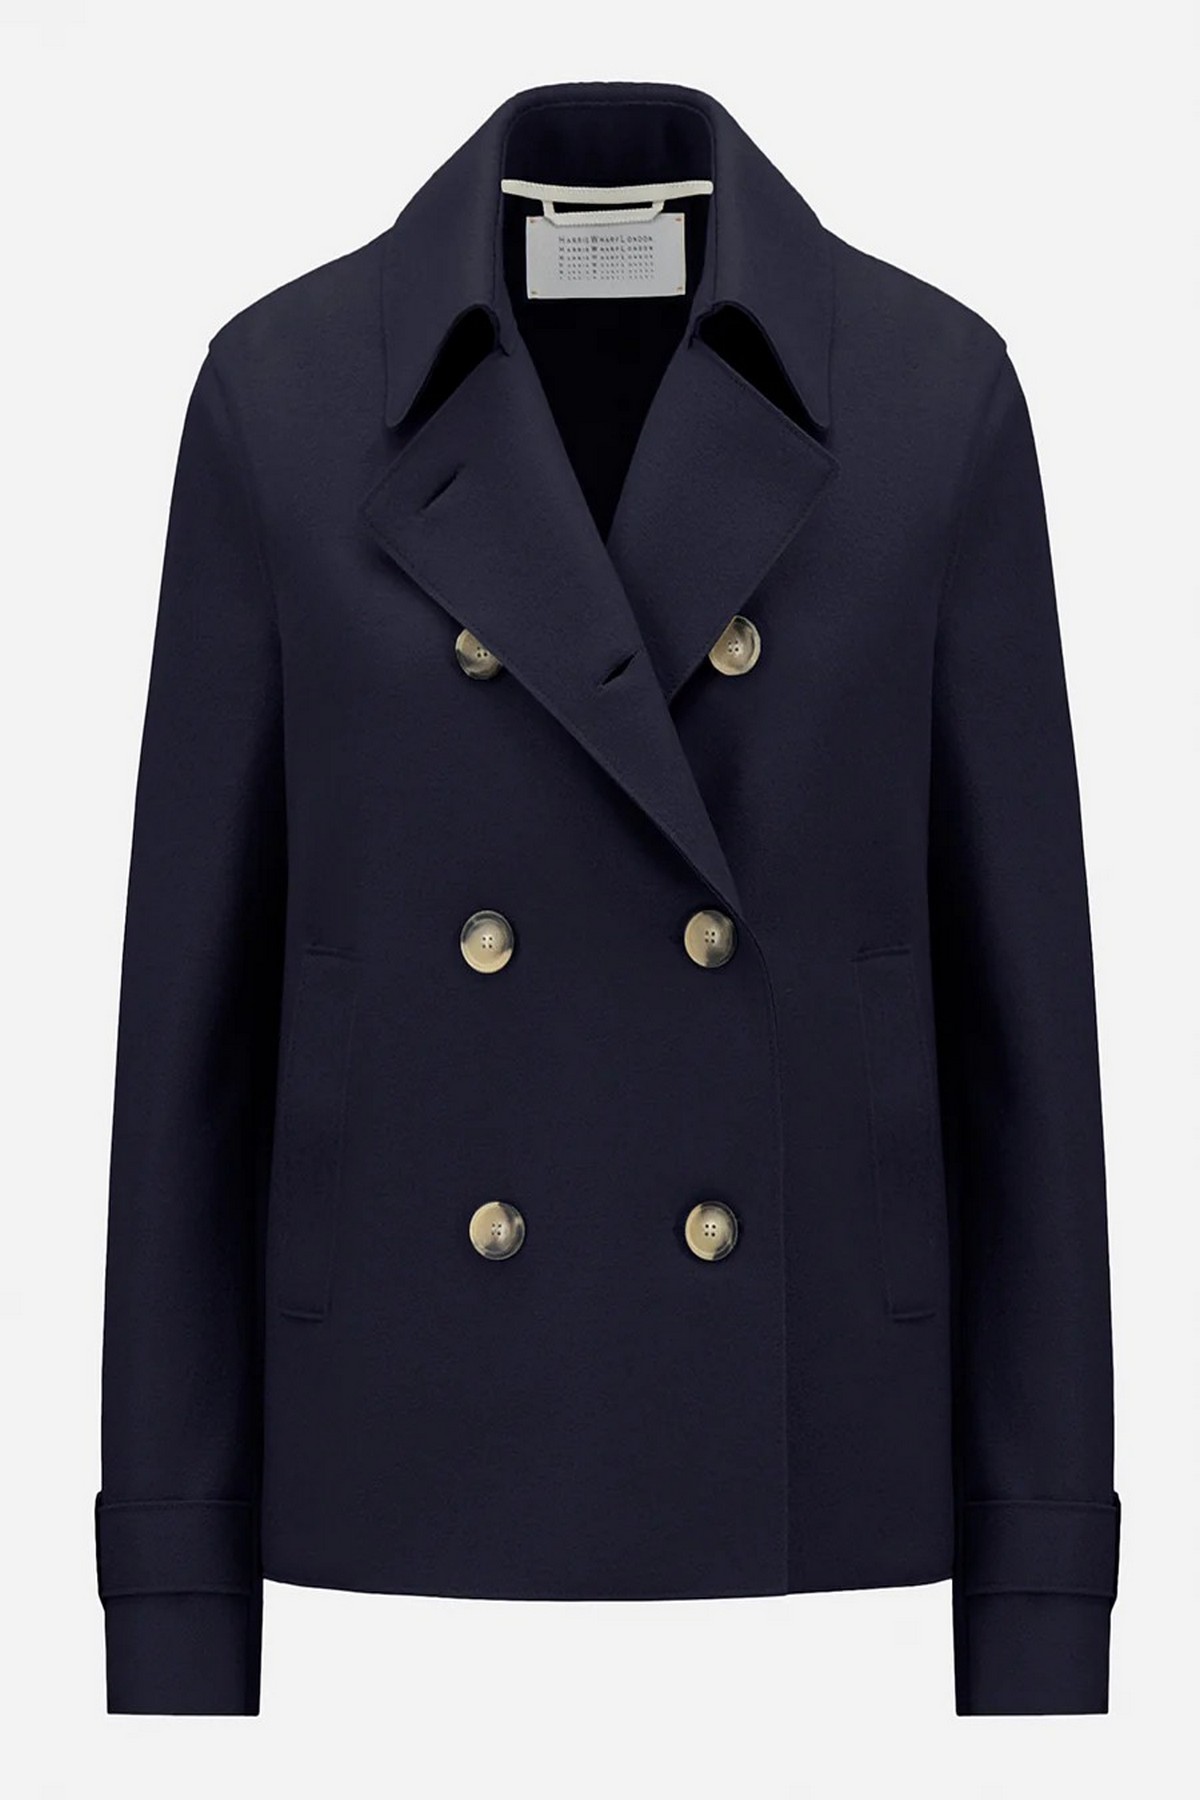 Mantel kort trenchcoat in de kleur navy blue van het merk Harris Wharf